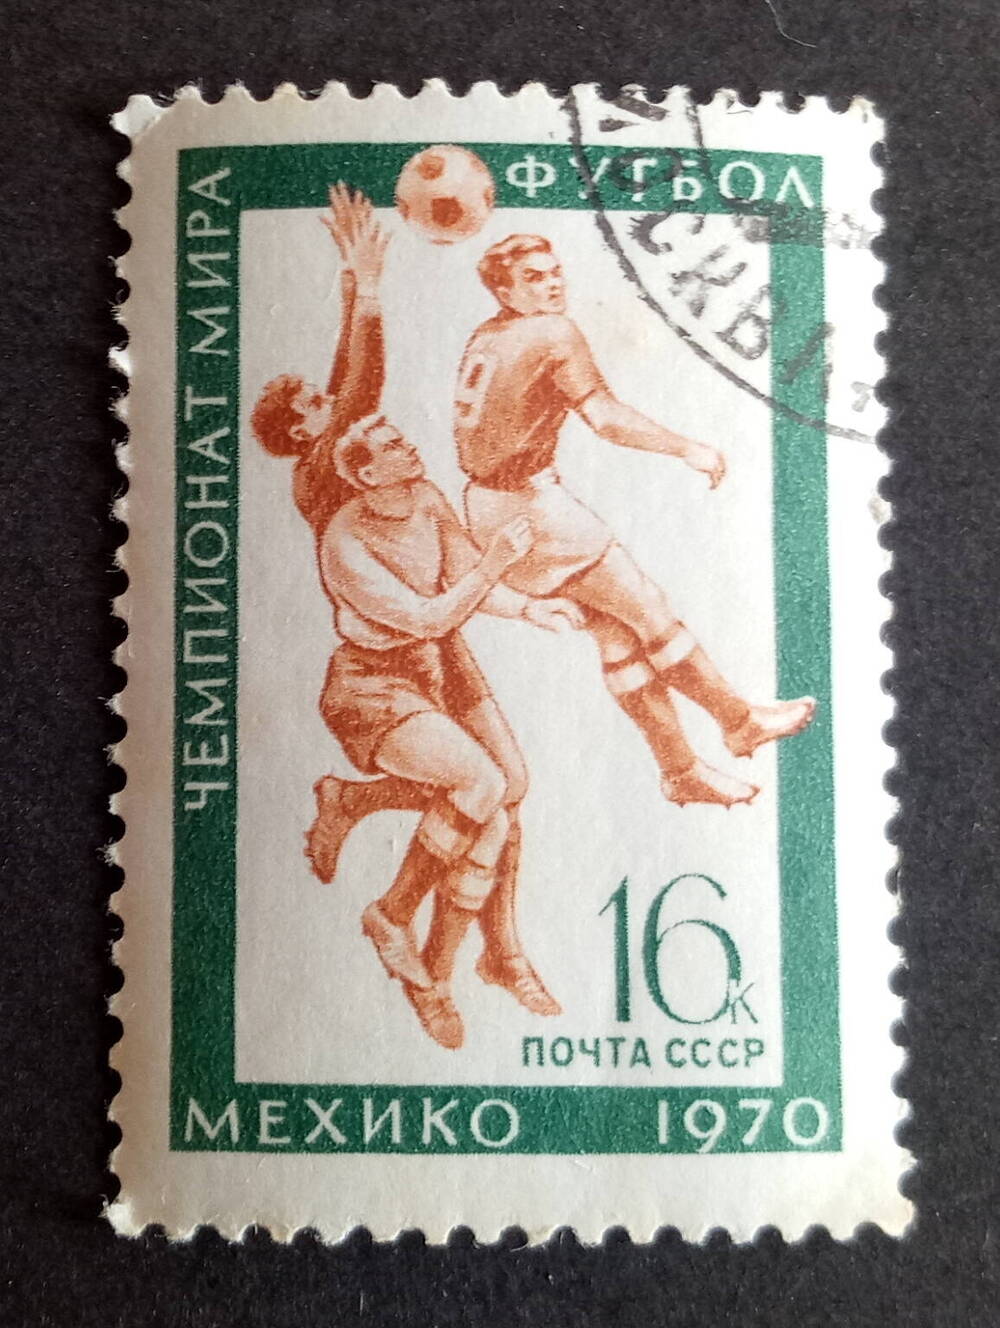 Номинал 16. Логотип ЧМ В Мексике 1970. Почтовые марки Мехико 68. Почтовые марки Парагвай Мехико 88. Mexico 1970 logo.